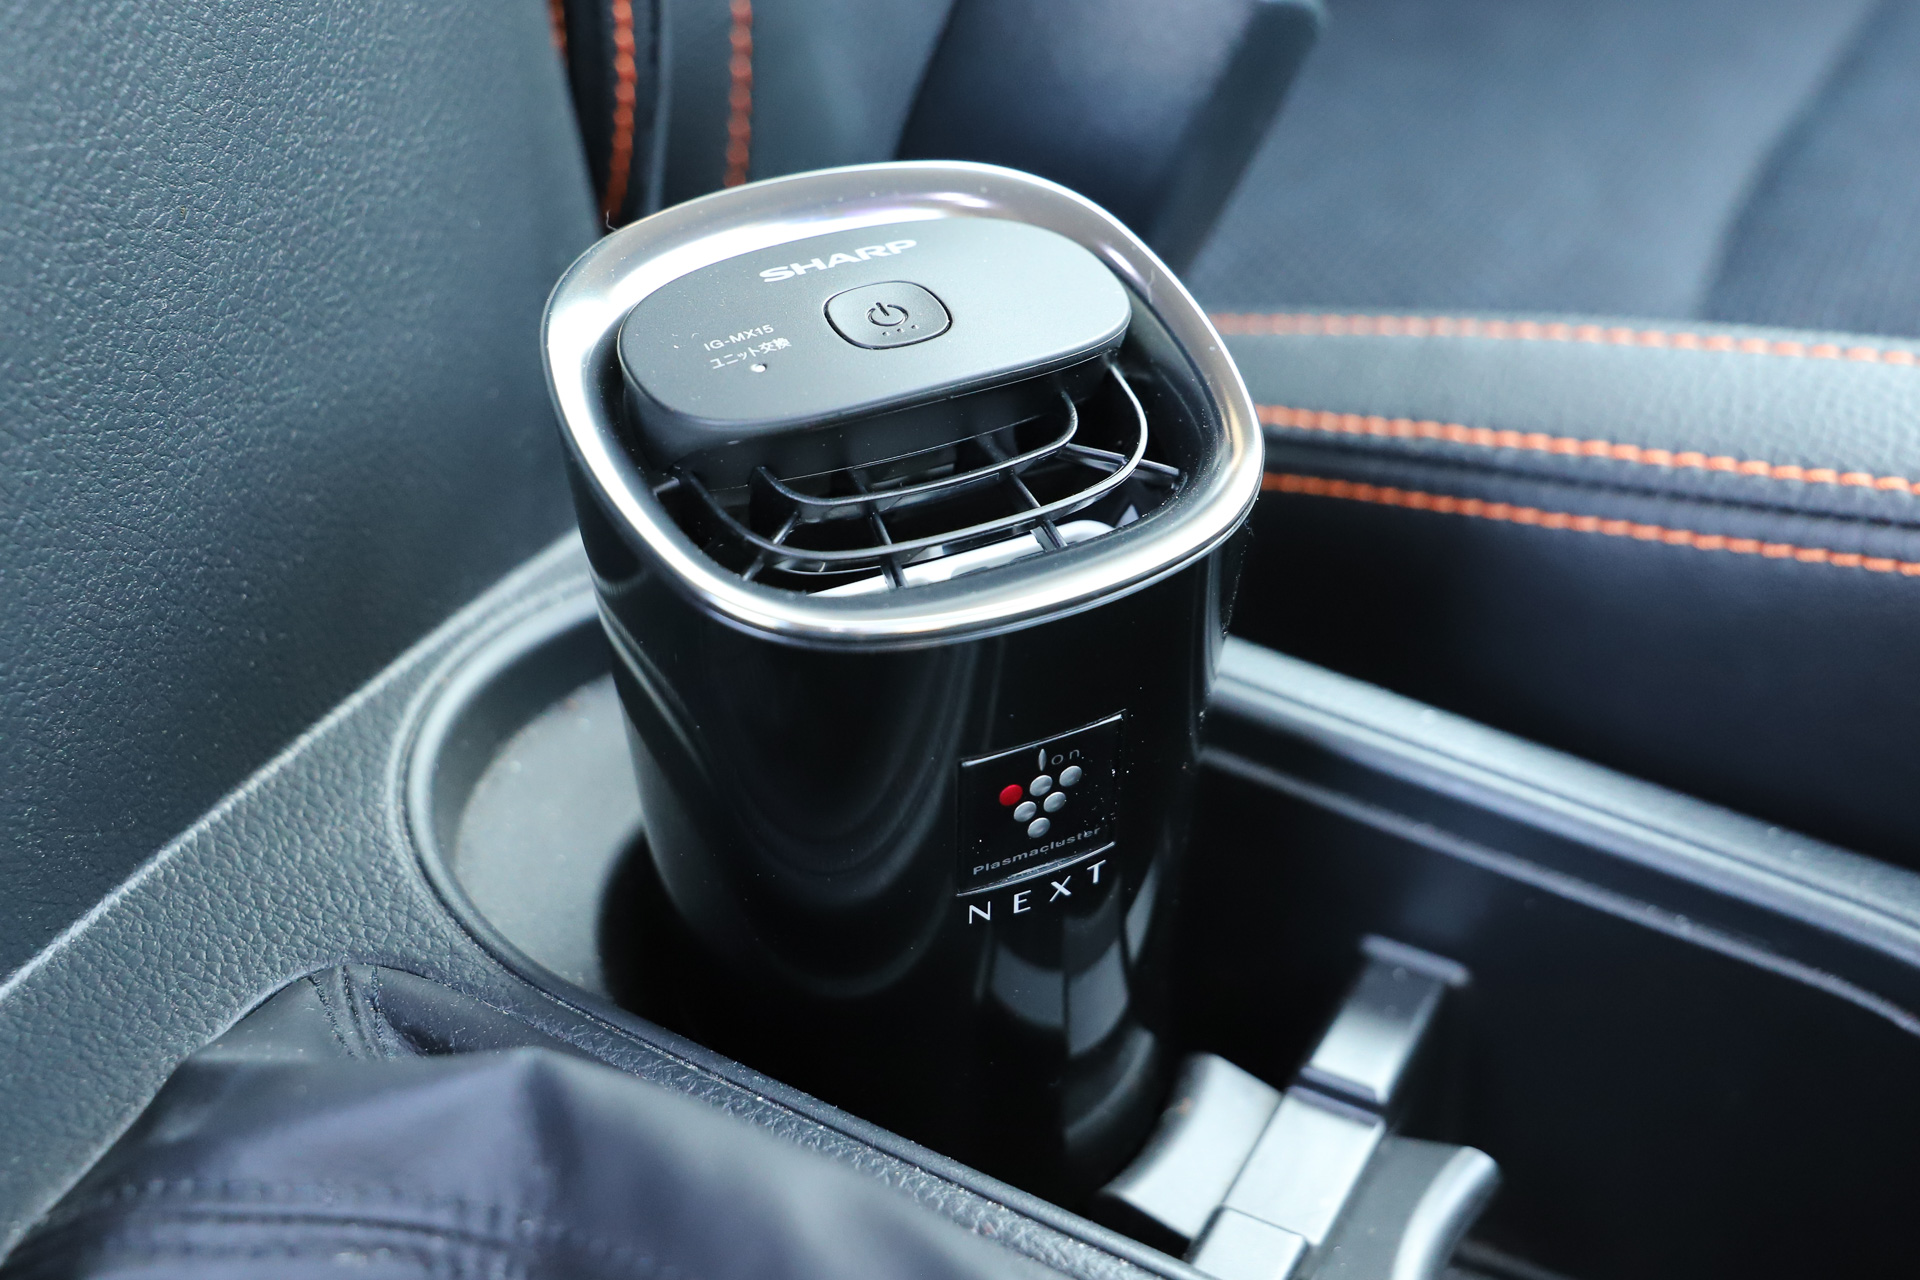 シャープの車載用プラズマクラスターイオン発生器「IG-MX15」で車内環境向上チャレンジ - Car Watch